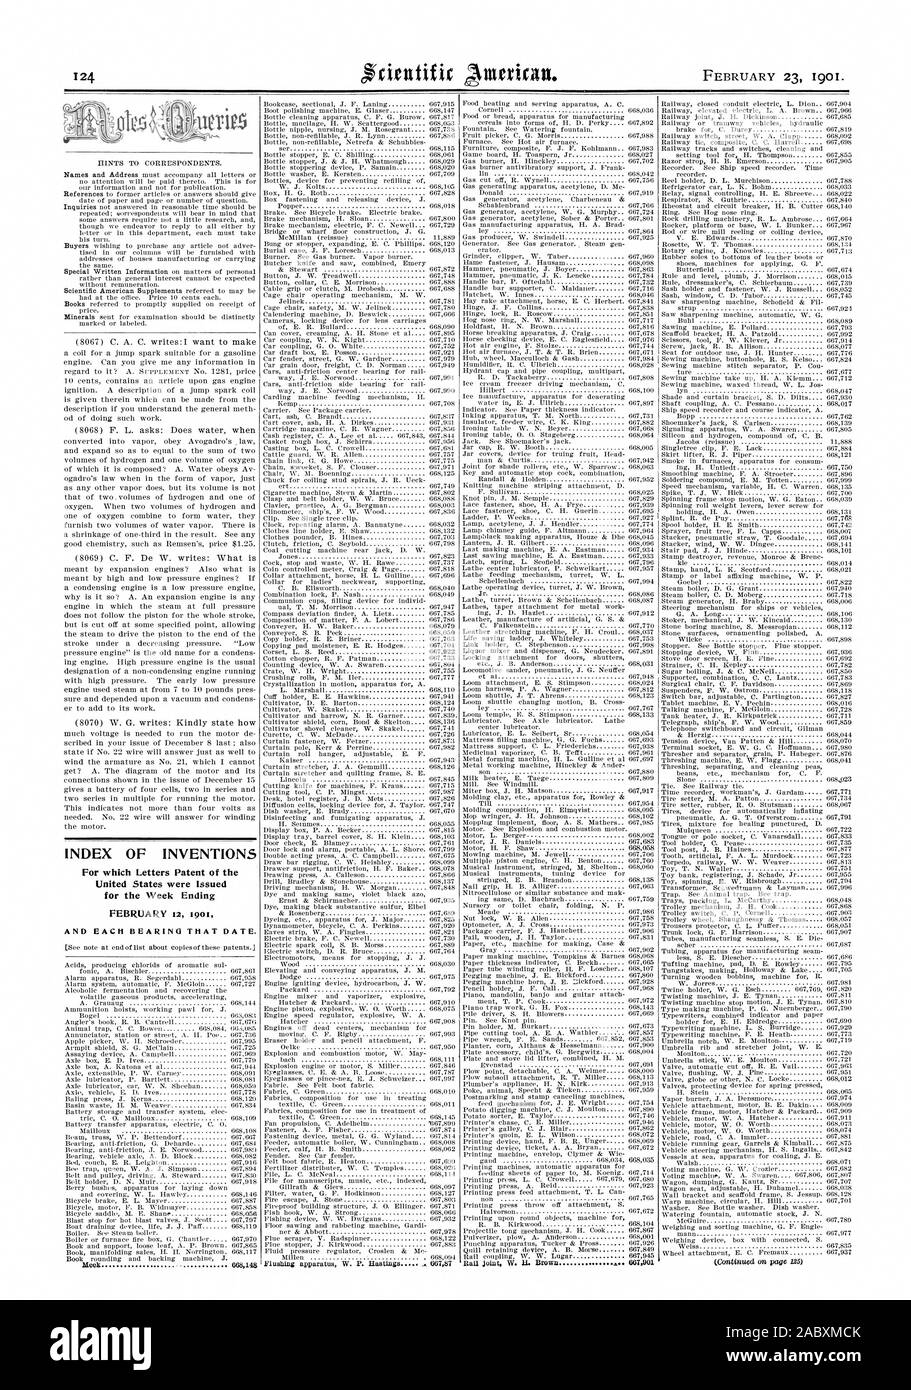 Indice delle invenzioni per le quali lettere di Brevetto degli Stati Uniti sono stati rilasciati per i fine settimana e ogni cuscinetto che data., Scientific American, 1901-02-11 Foto Stock